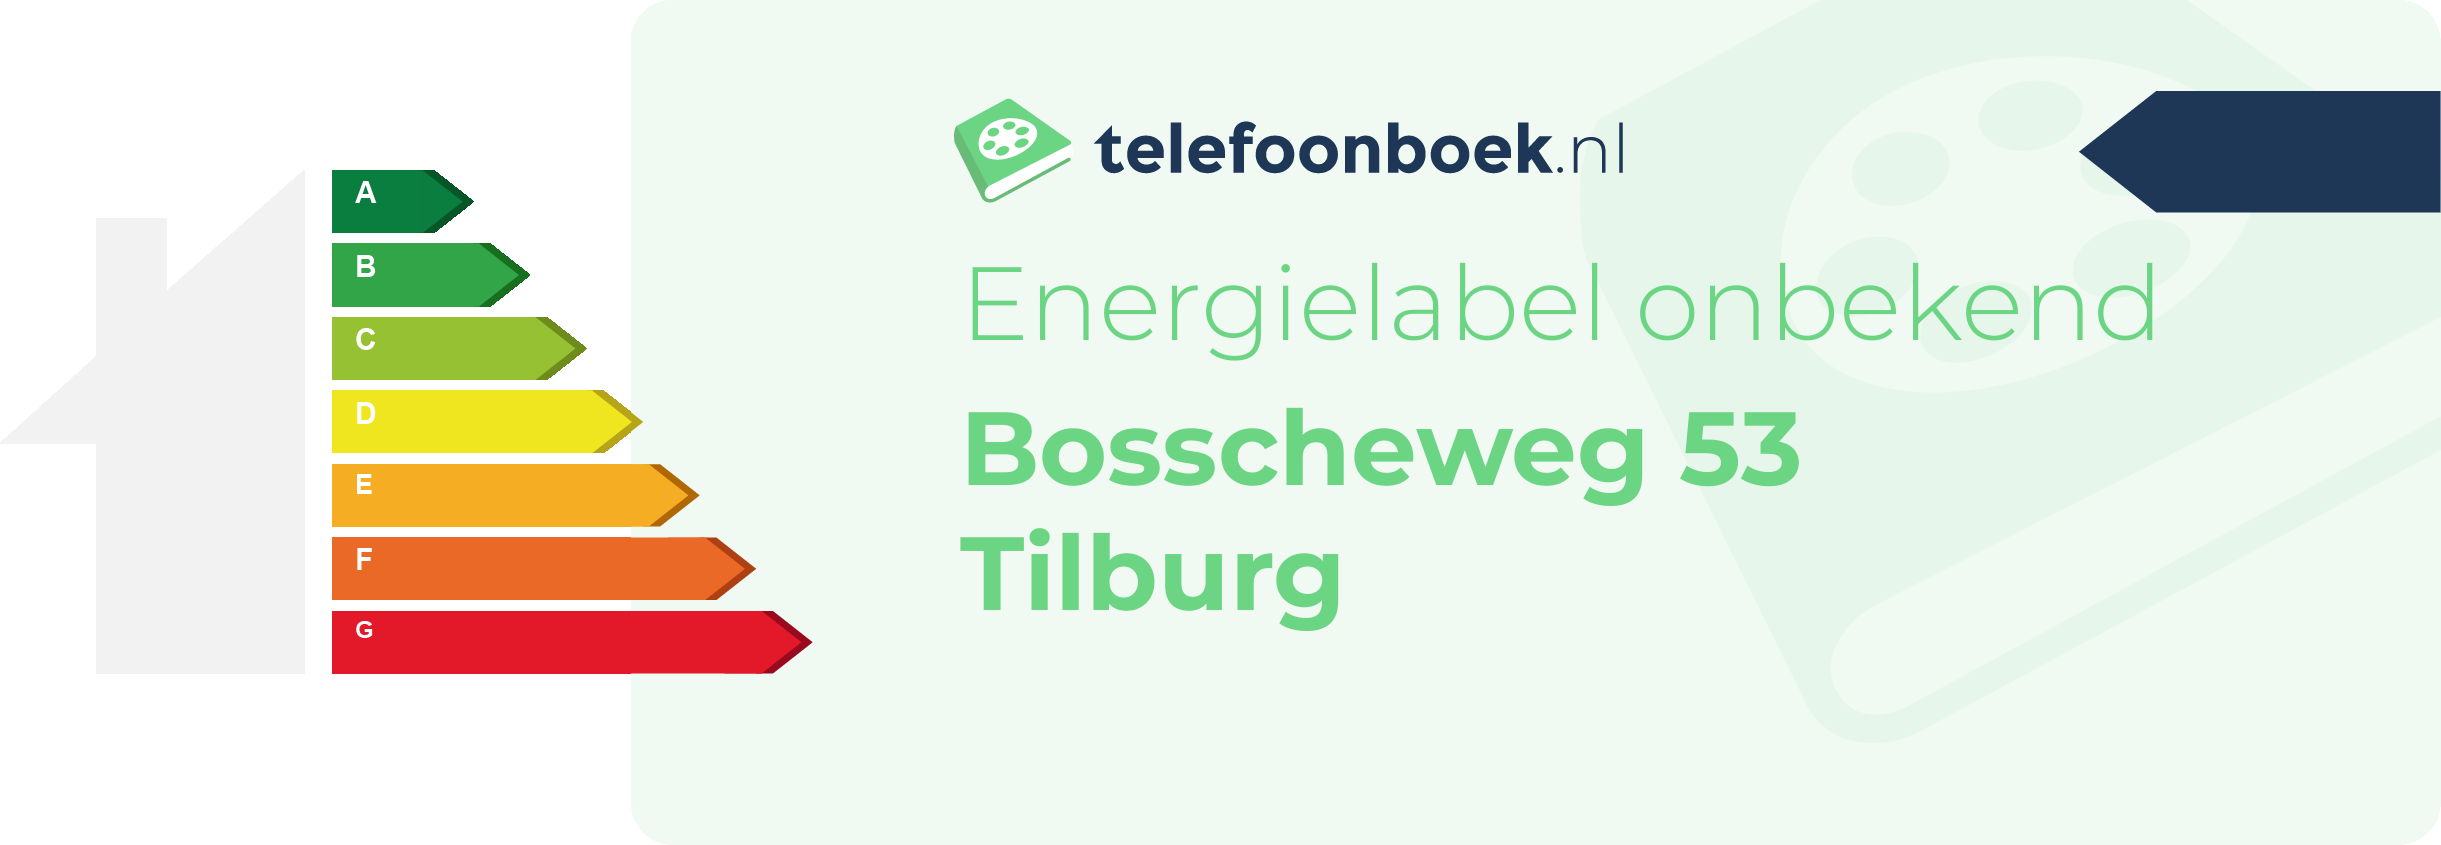 Energielabel Bosscheweg 53 Tilburg